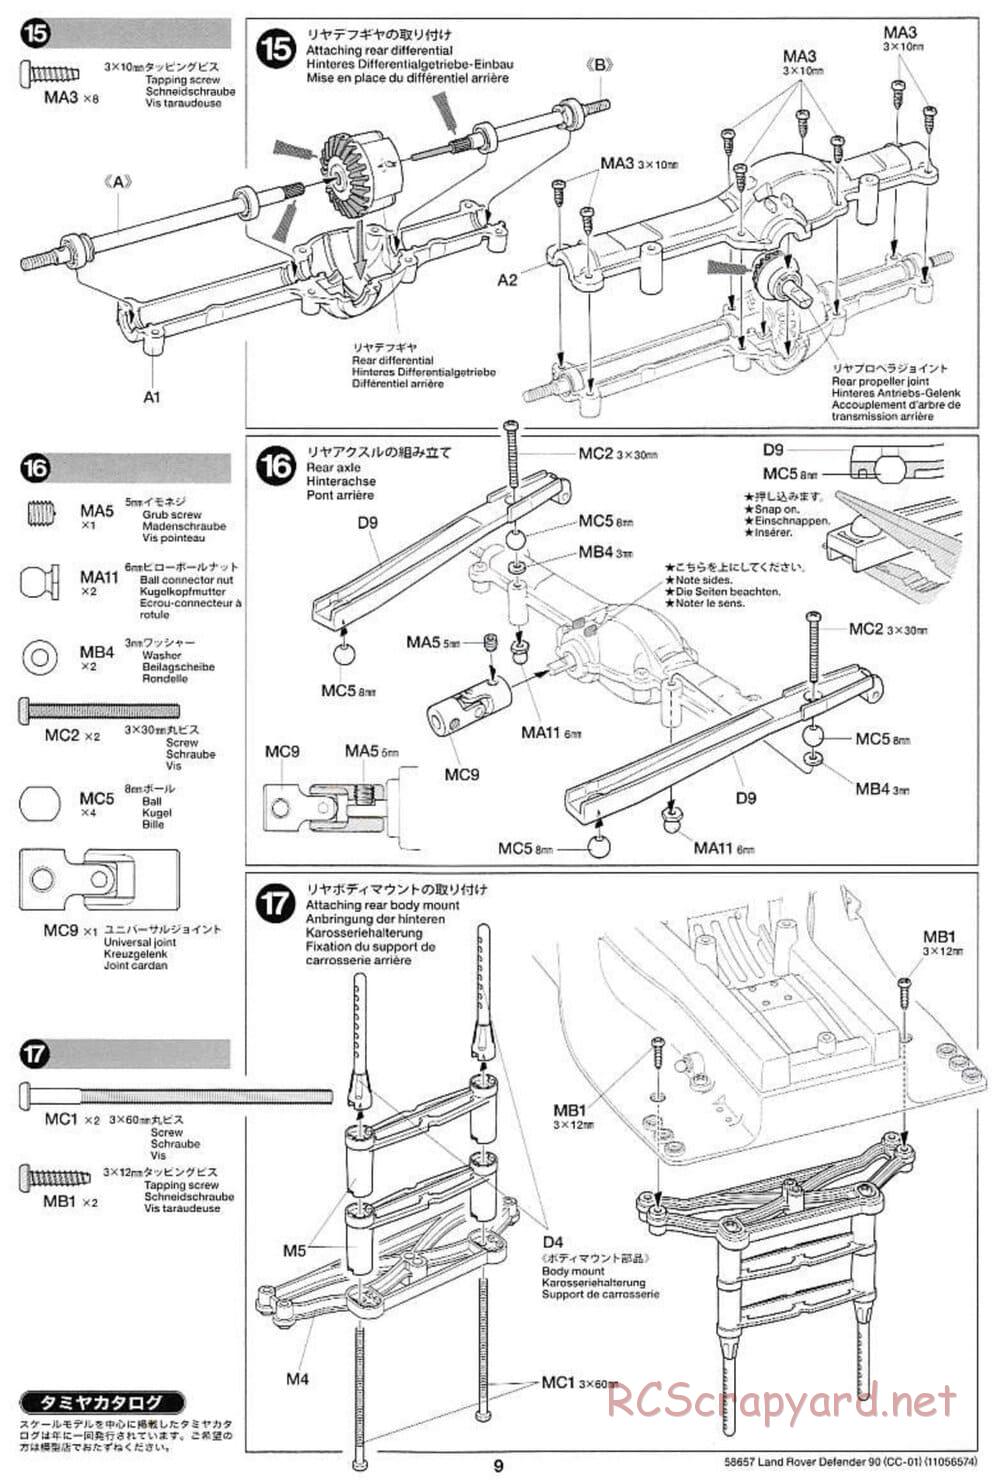 Tamiya - Land Rover Defender 90 - CC-01 Chassis - Manual - Page 9